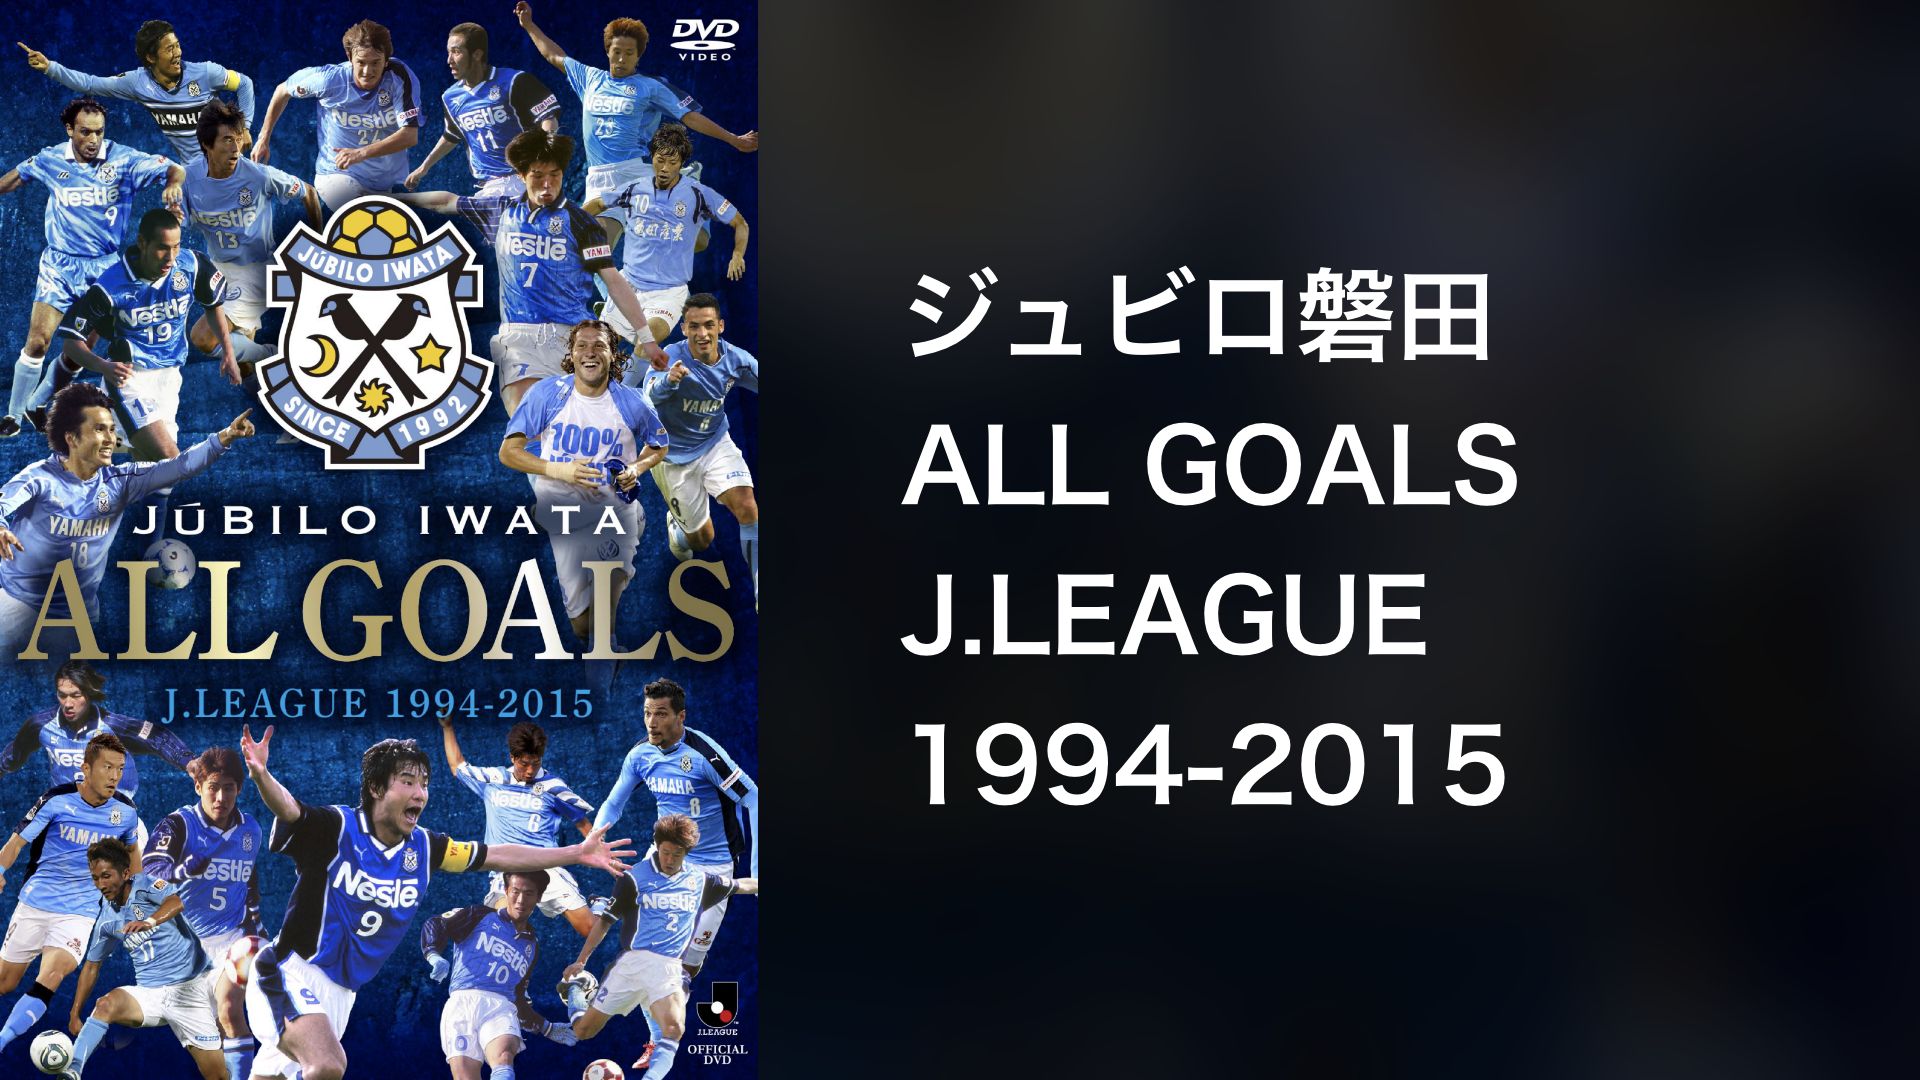 ジュビロ磐田 ALL GOALS J.LEAGUE 1994-2015